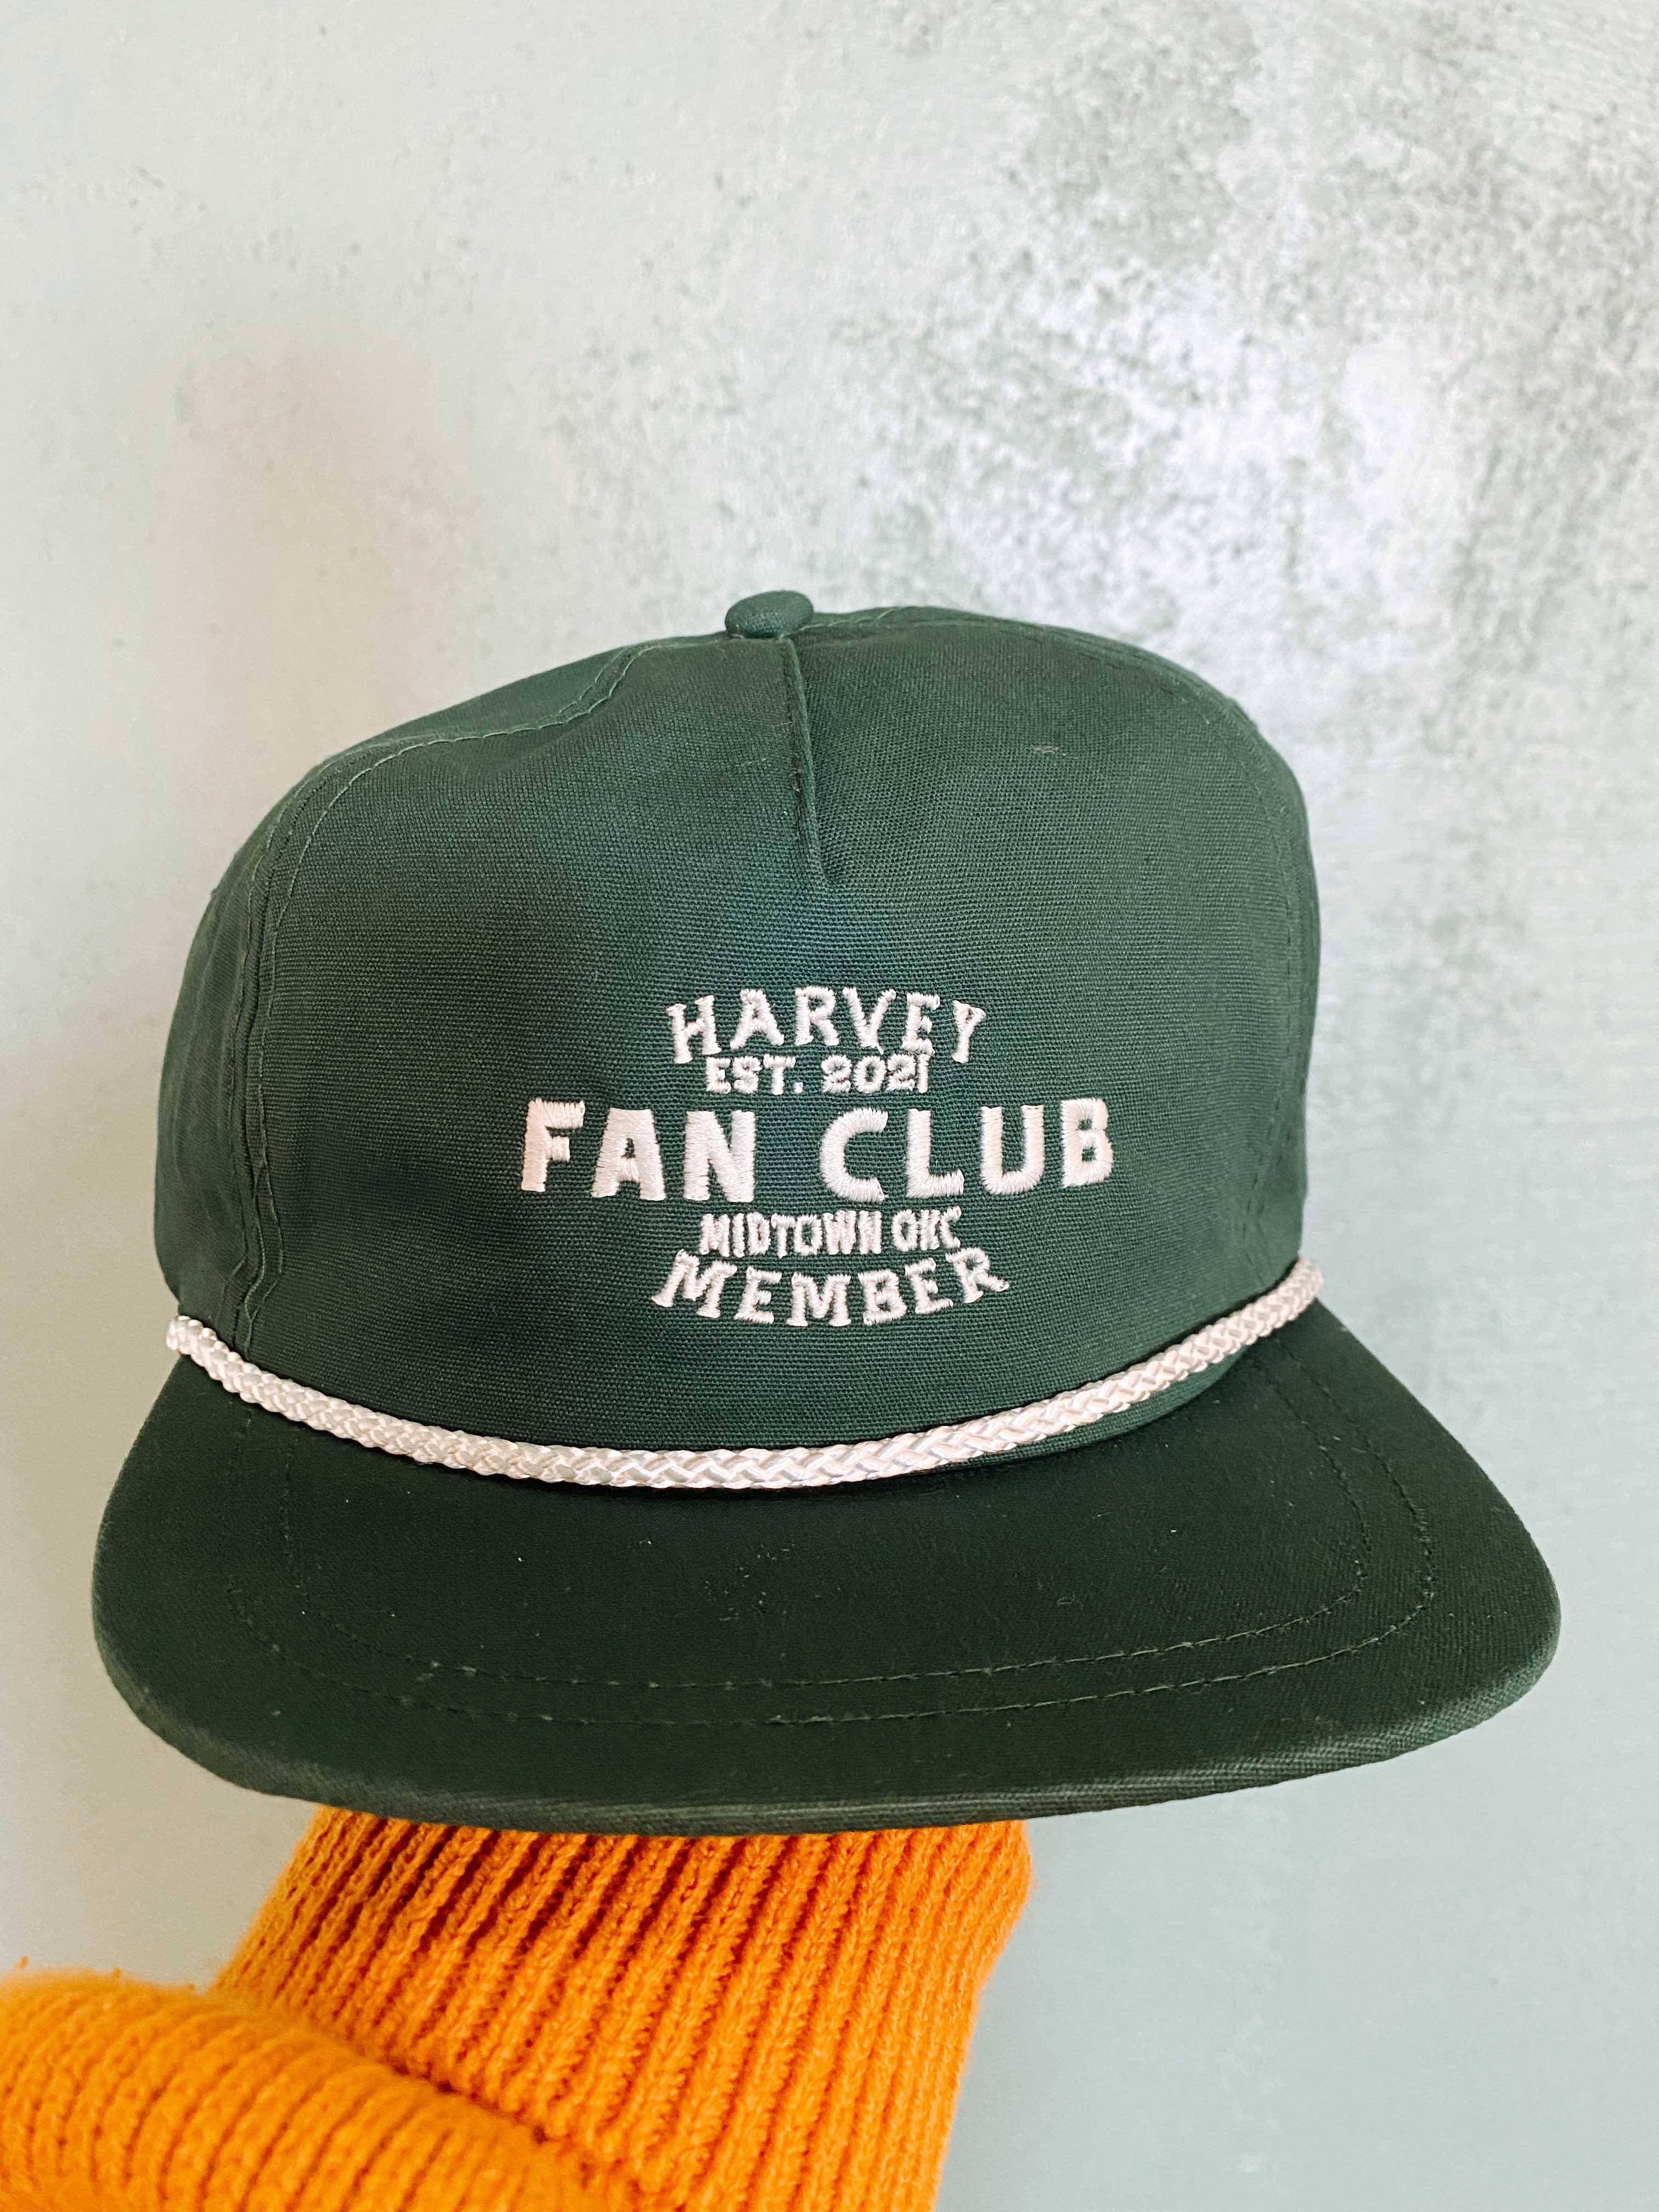 Harvey Fan Club Member Hat